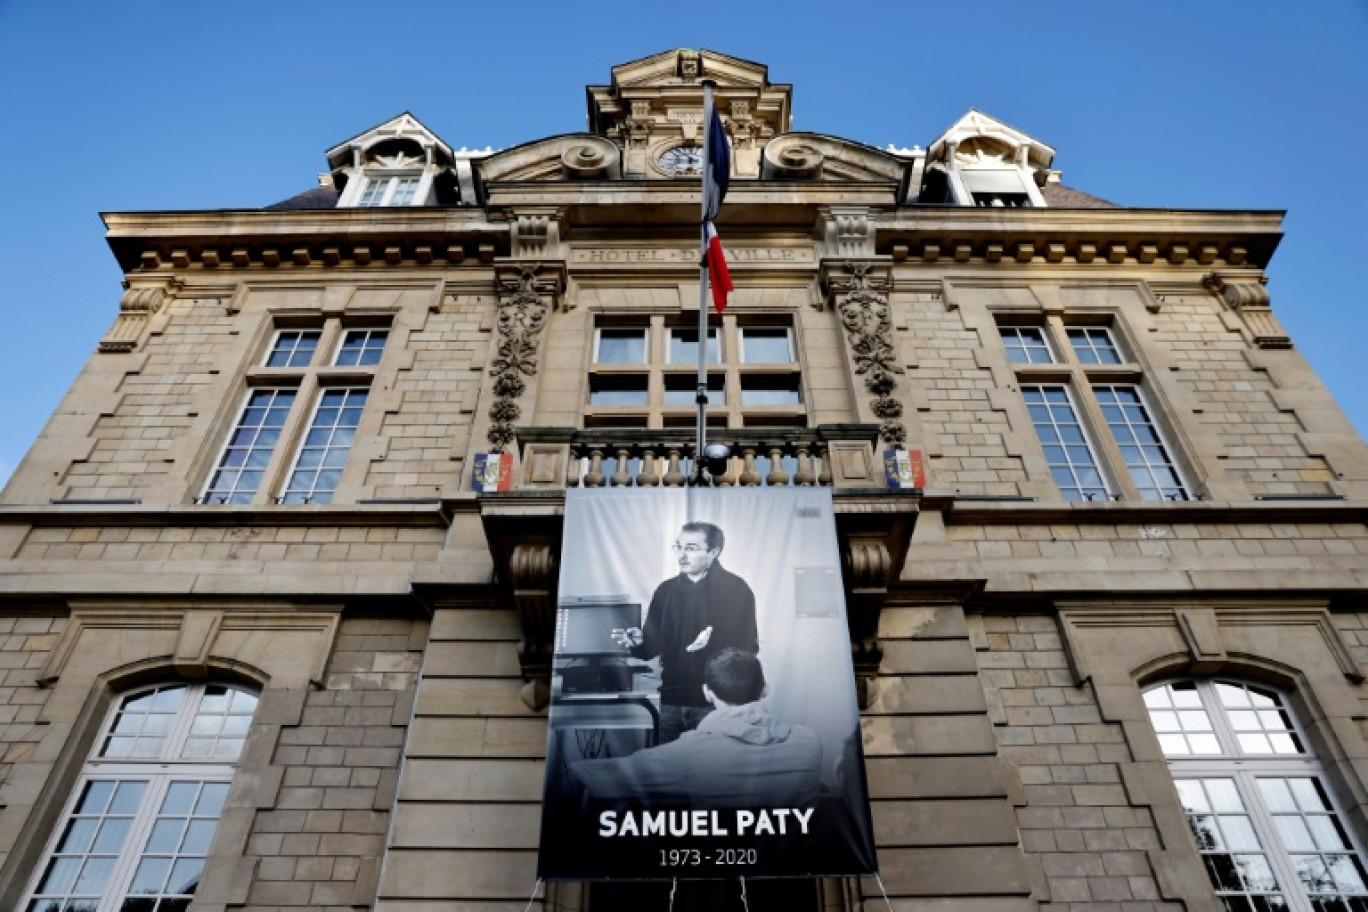 Un portrait du professeur Samuel Paty sur la façade de la mairie de Conflans-Sainte-Honorine, le 3 novembre 2020 dans les Yvelines © Thomas COEX